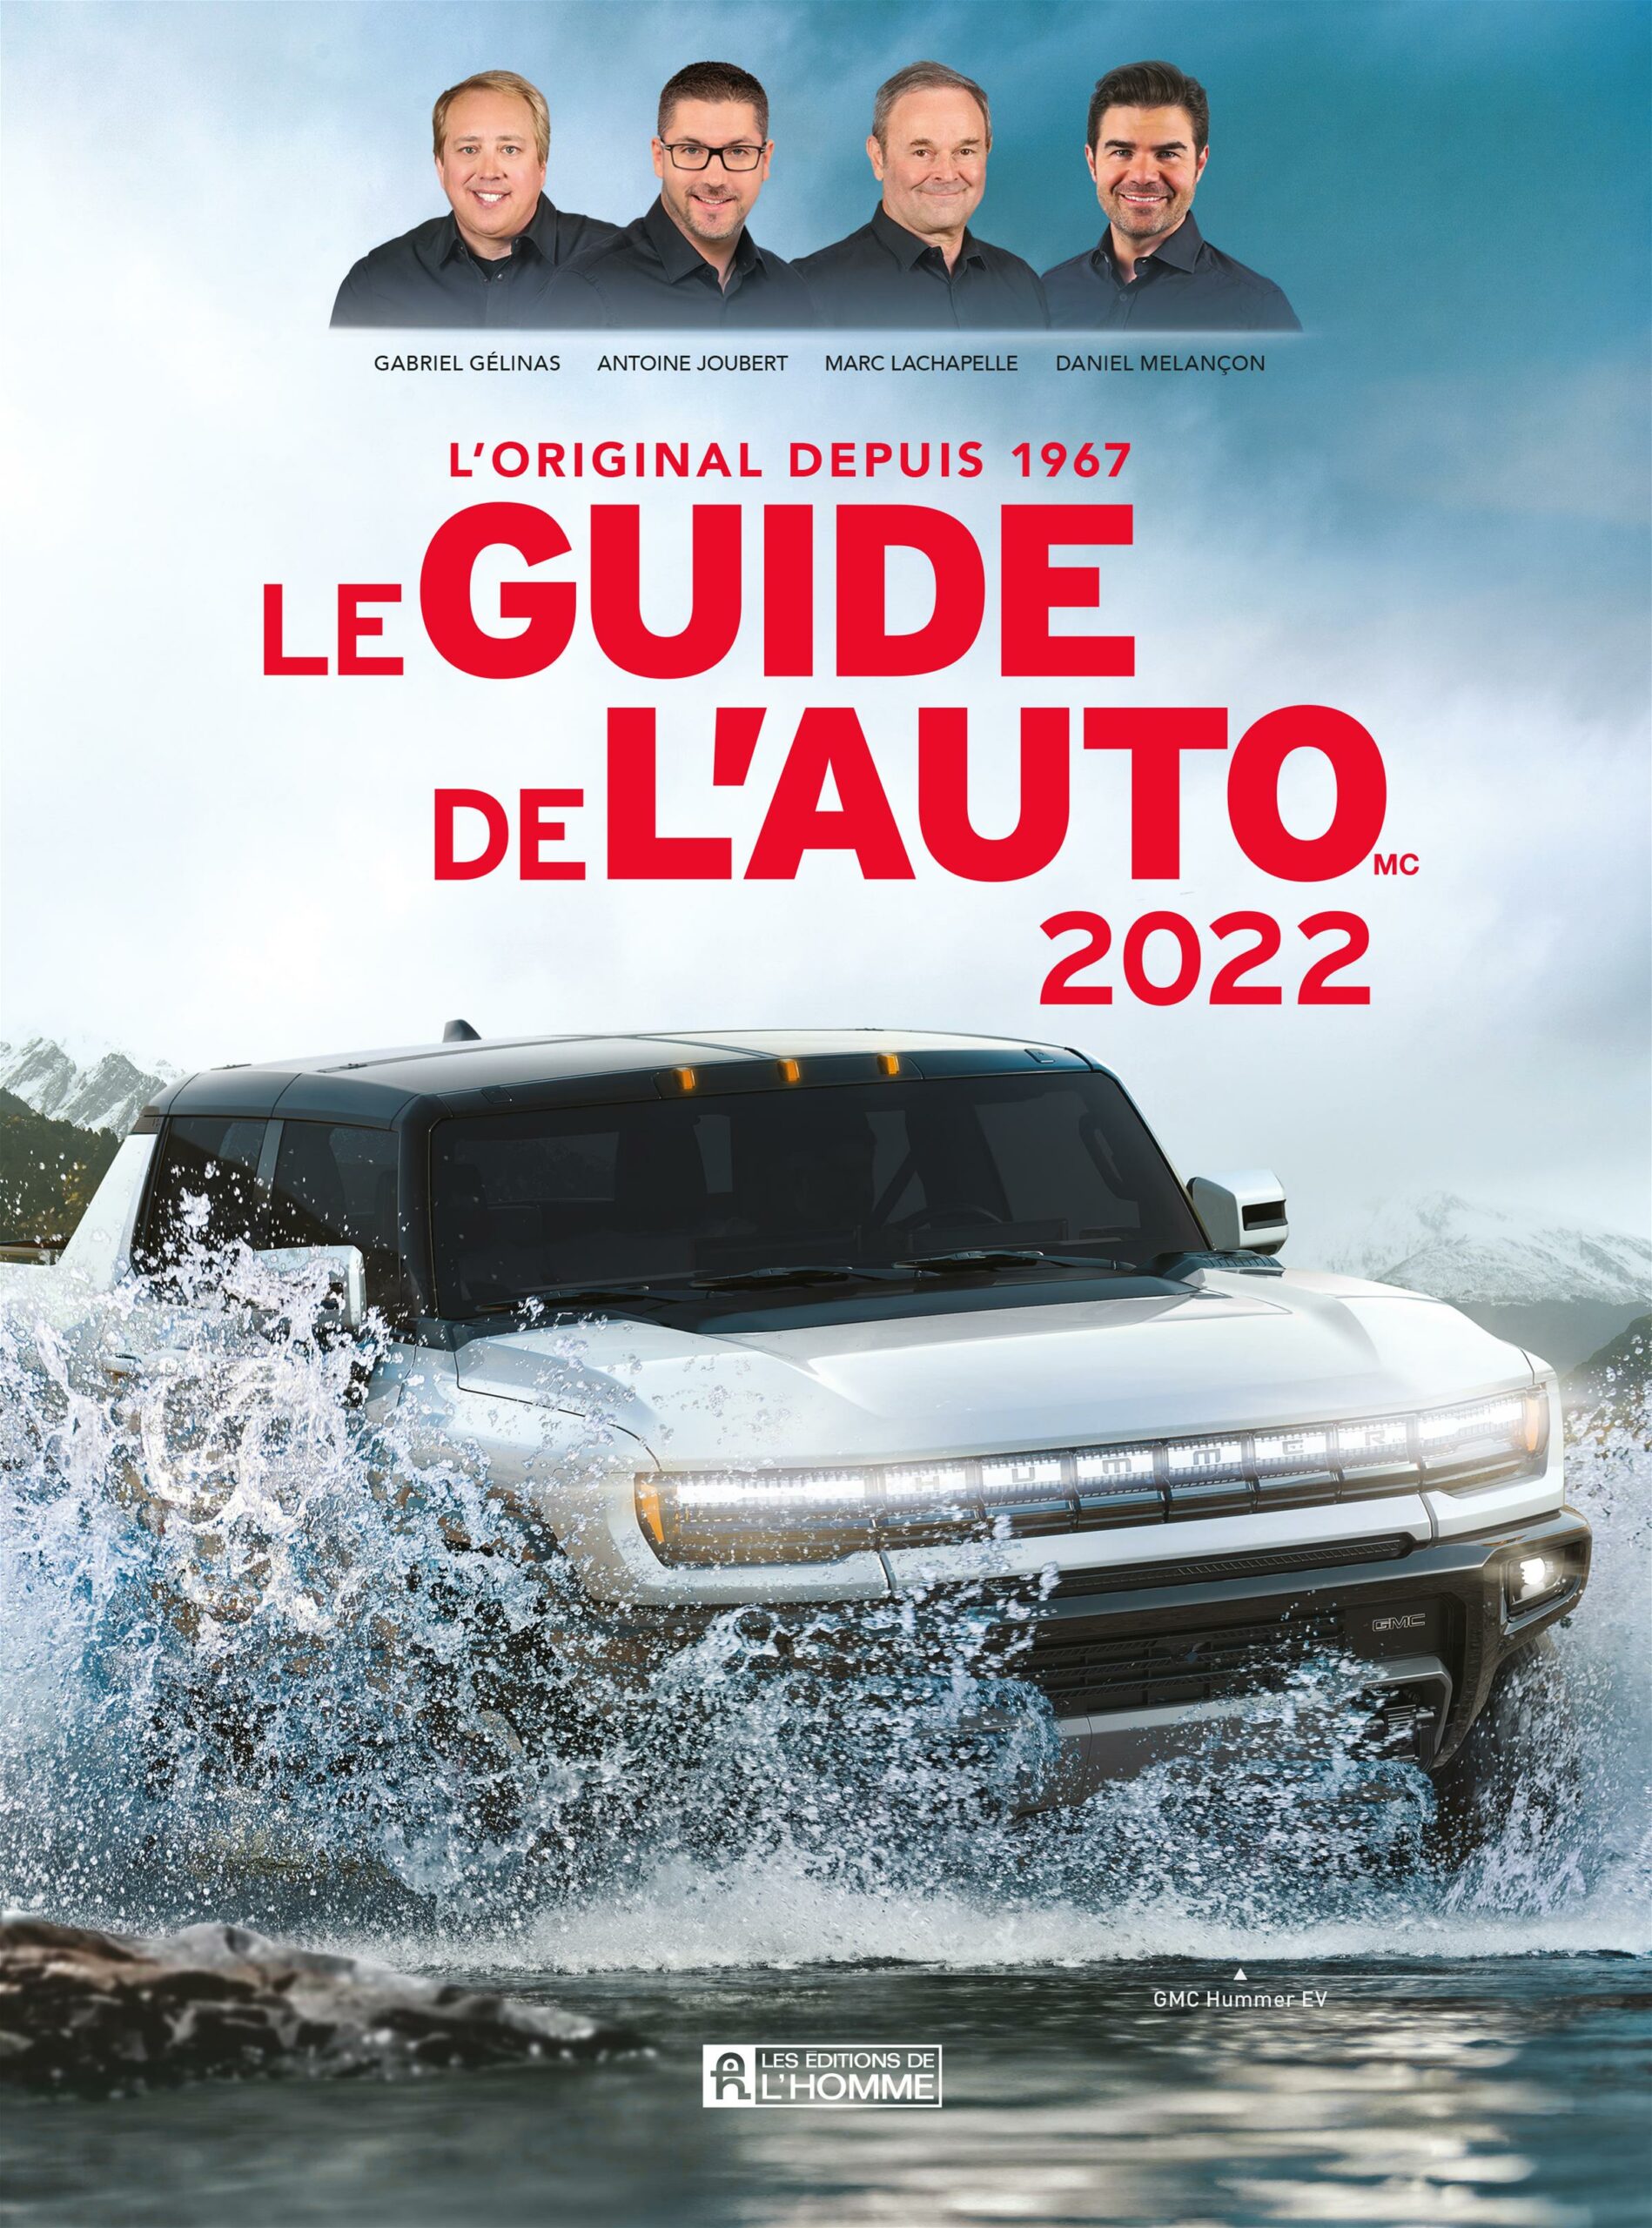 Le Guide de l'auto 2022 de Gabriel Gélinas